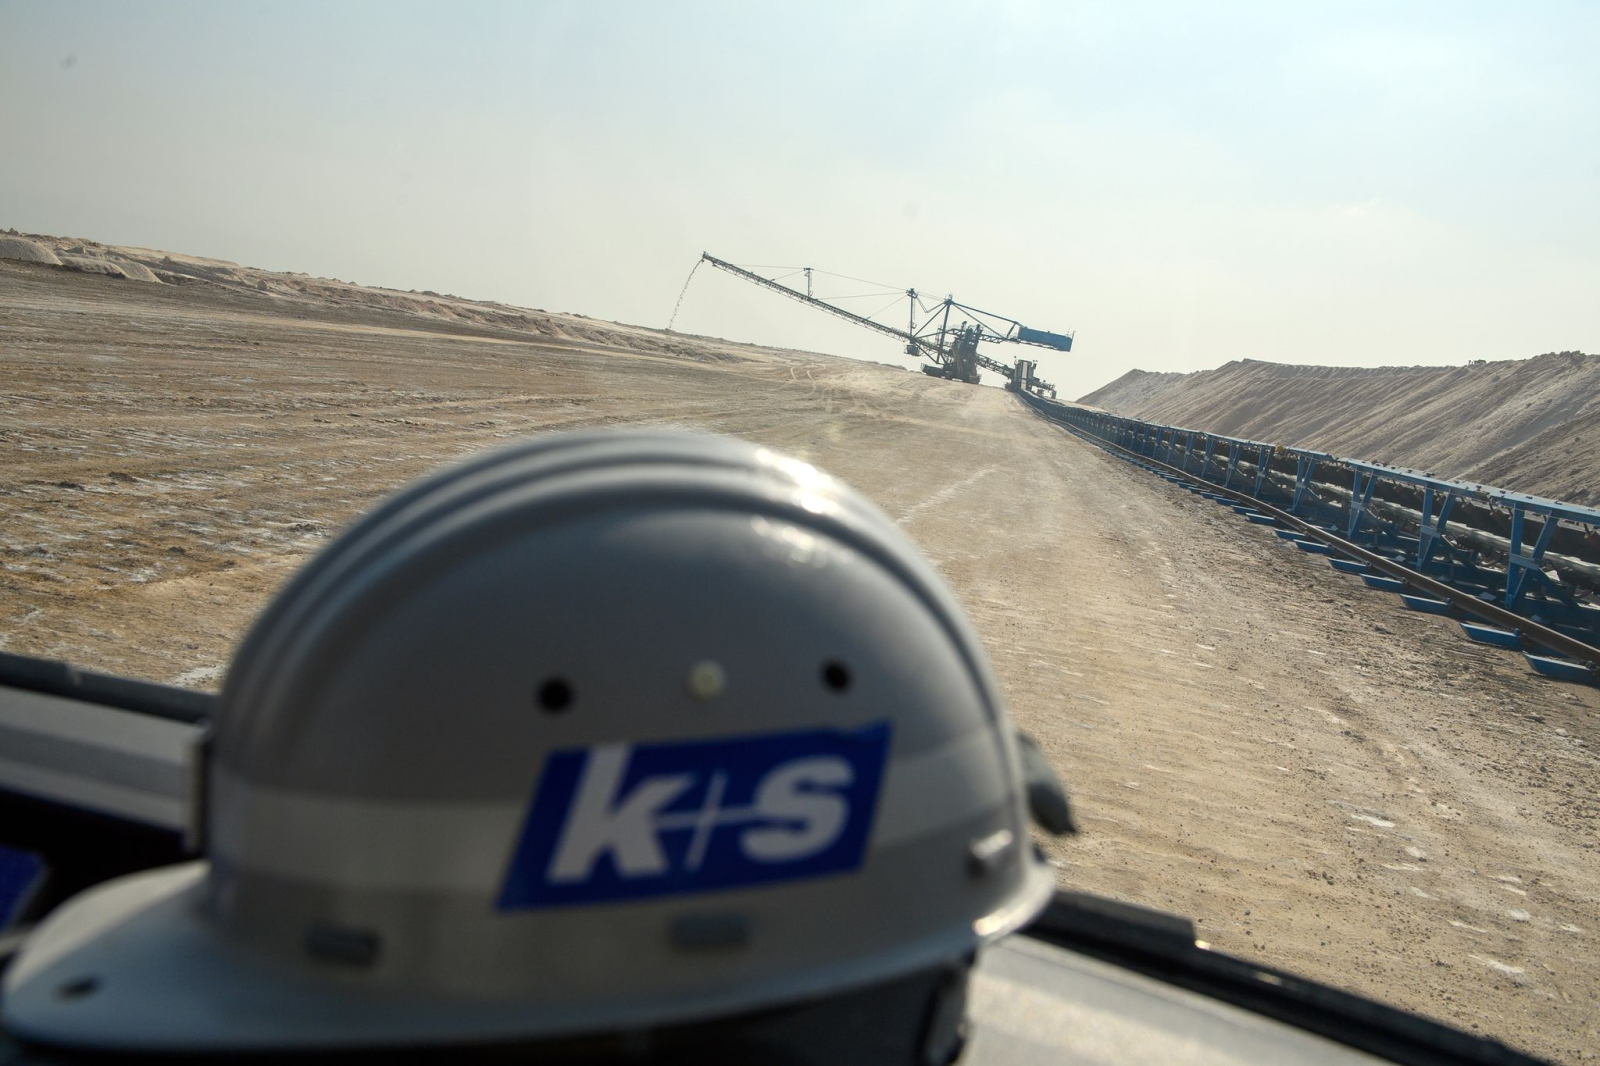 "K+S" steht auf einem Helm von "K+S Minerals and Agriculture".